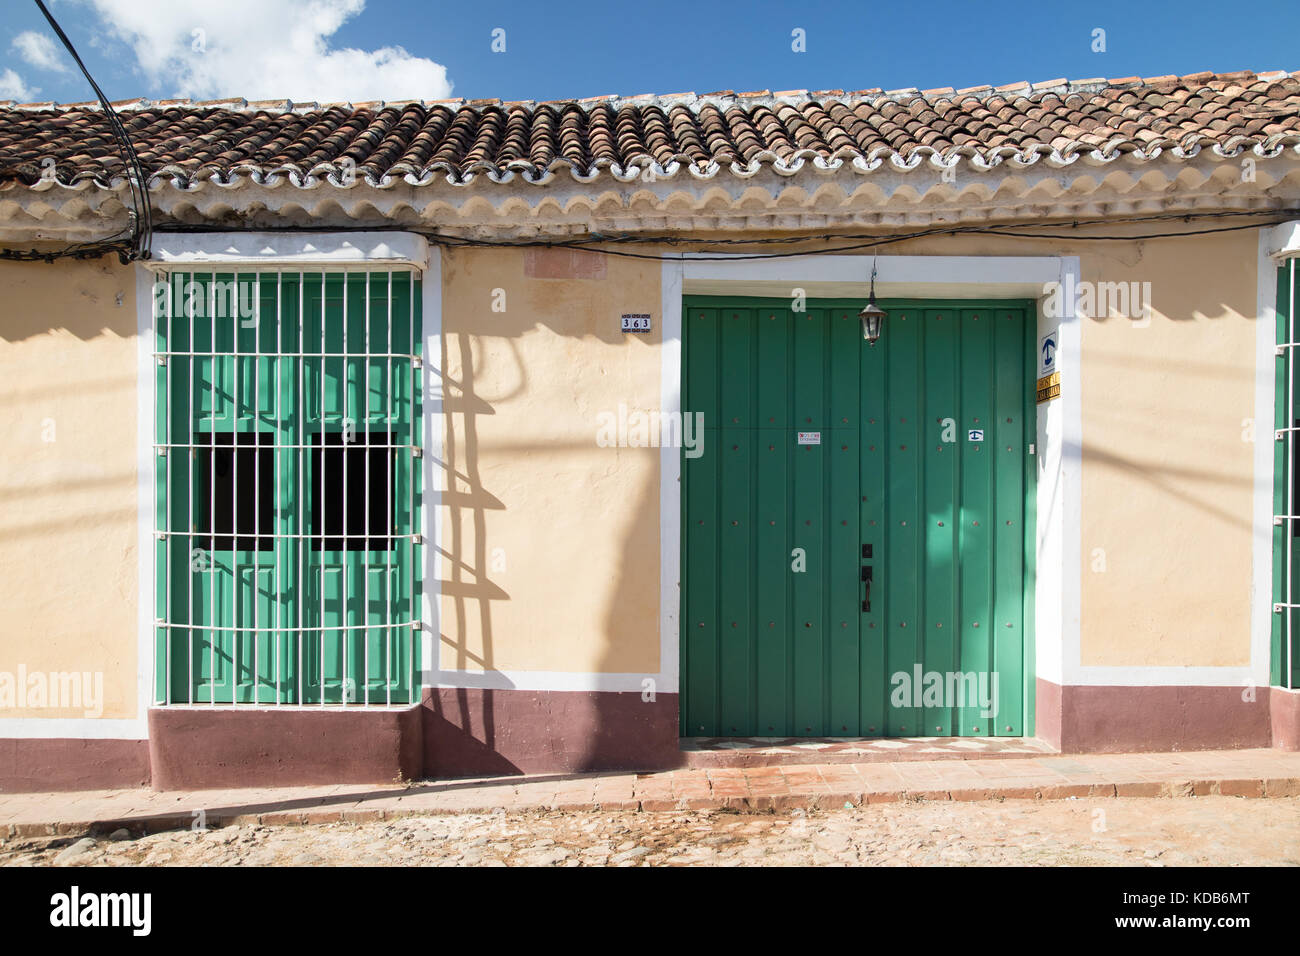 Schönen kolonialen Architektur entlang der gepflasterten Straßen von Trinidad, Kuba. Stockfoto